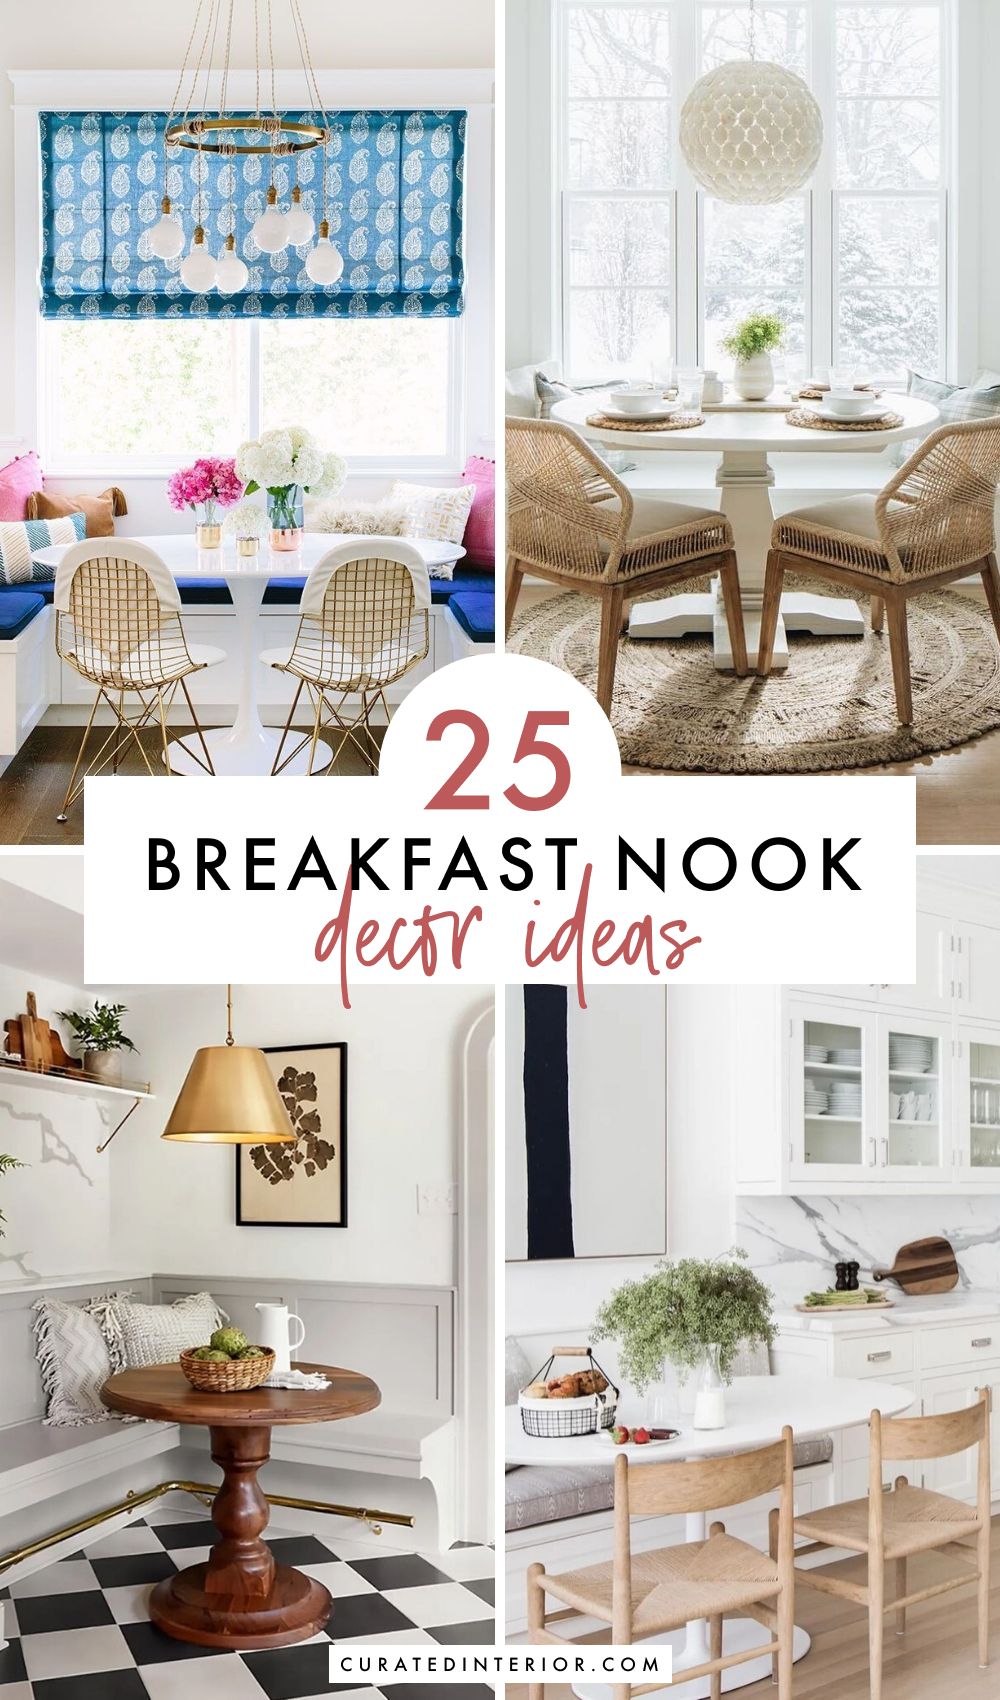 18 Breakfast Nook Decor Ideas